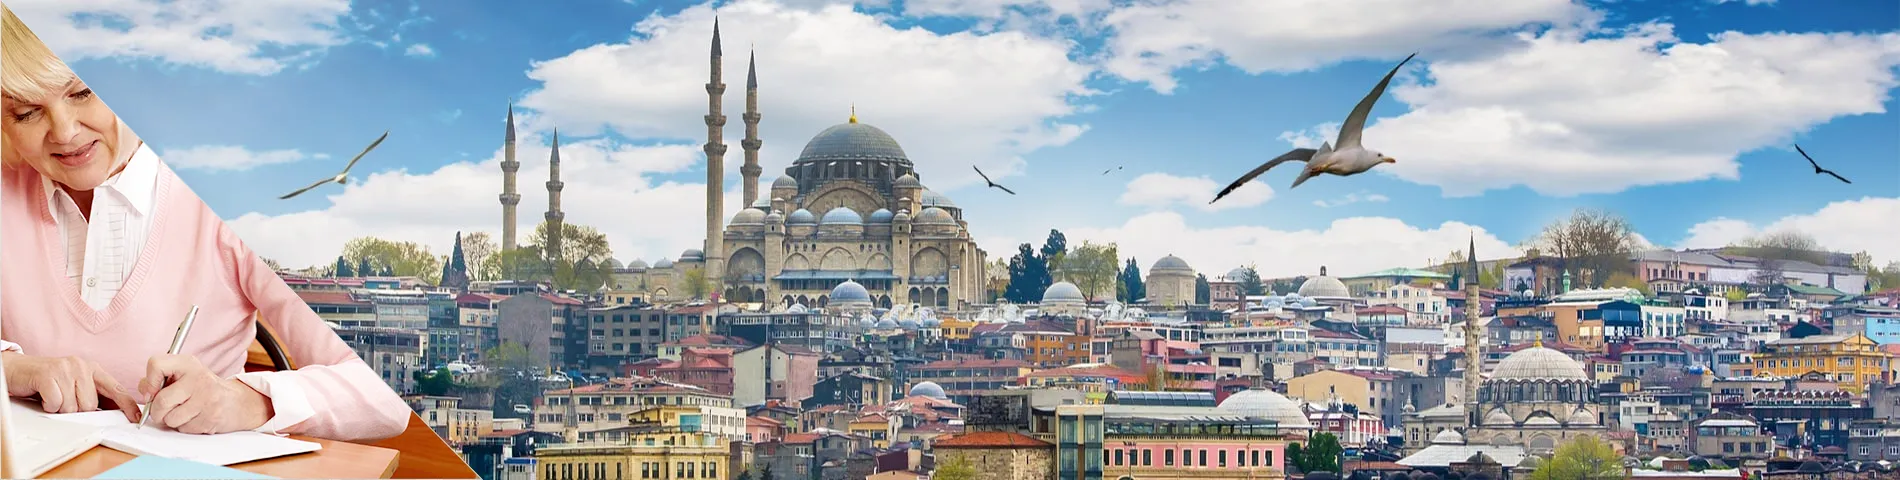 Стамбул - Для старшего возраста (50 плюс)